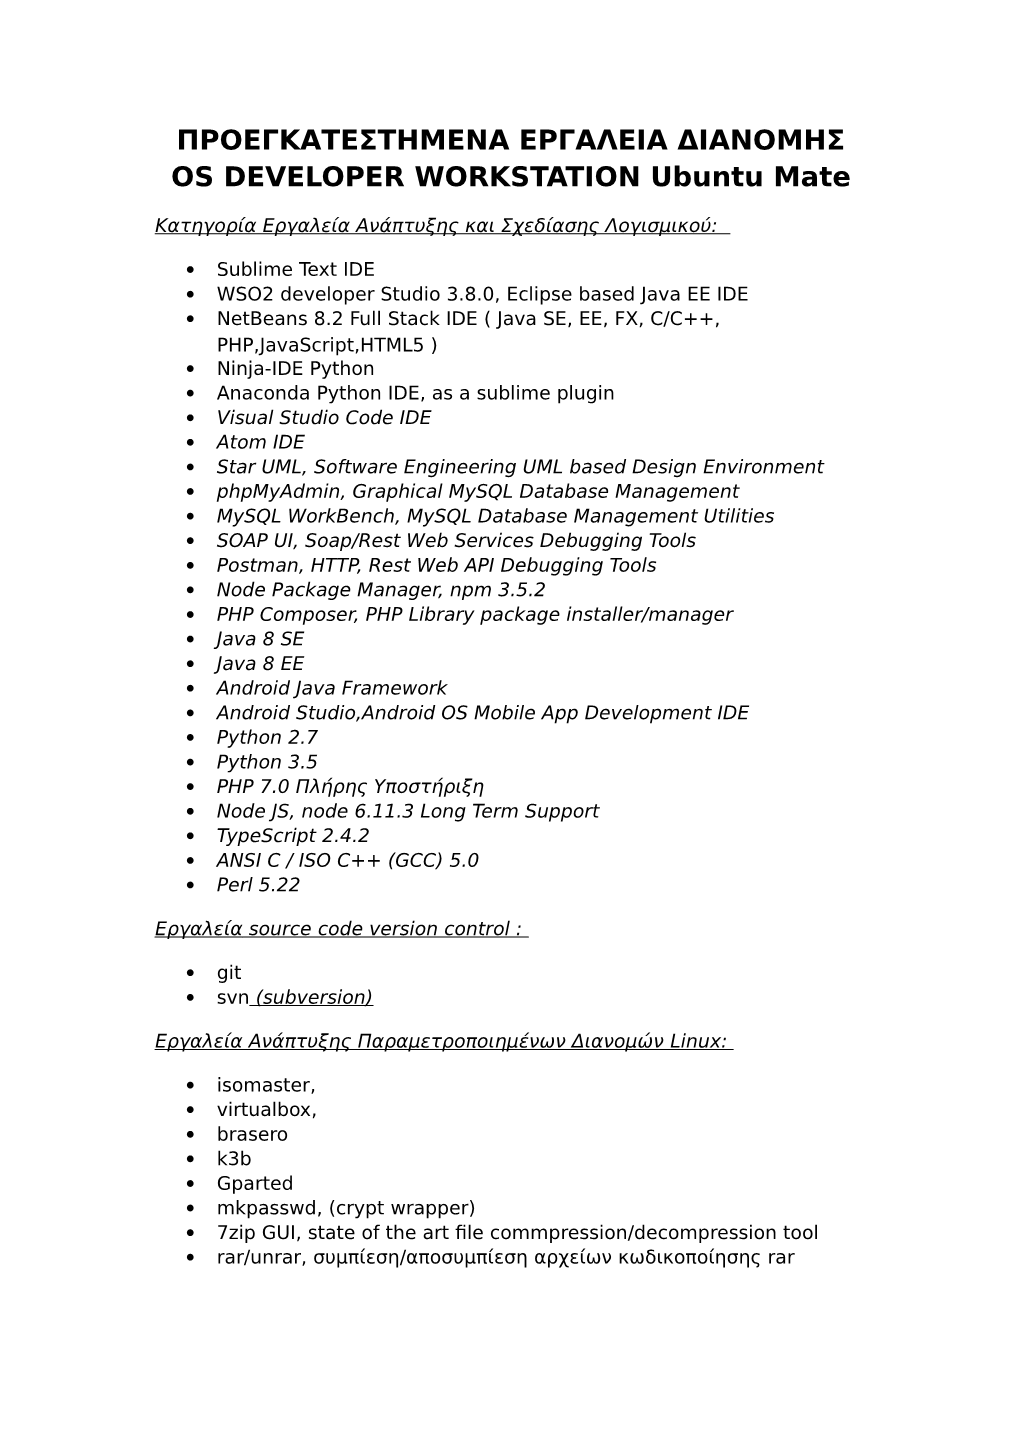 ΠΡΟΕΓΚΑΤΕΣΤΗΜΕΝΑ ΕΡΓΑΛΕΙΑ ΔΙΑΝΟΜΗΣ OS DEVELOPER WORKSTATION Ubuntu Mate